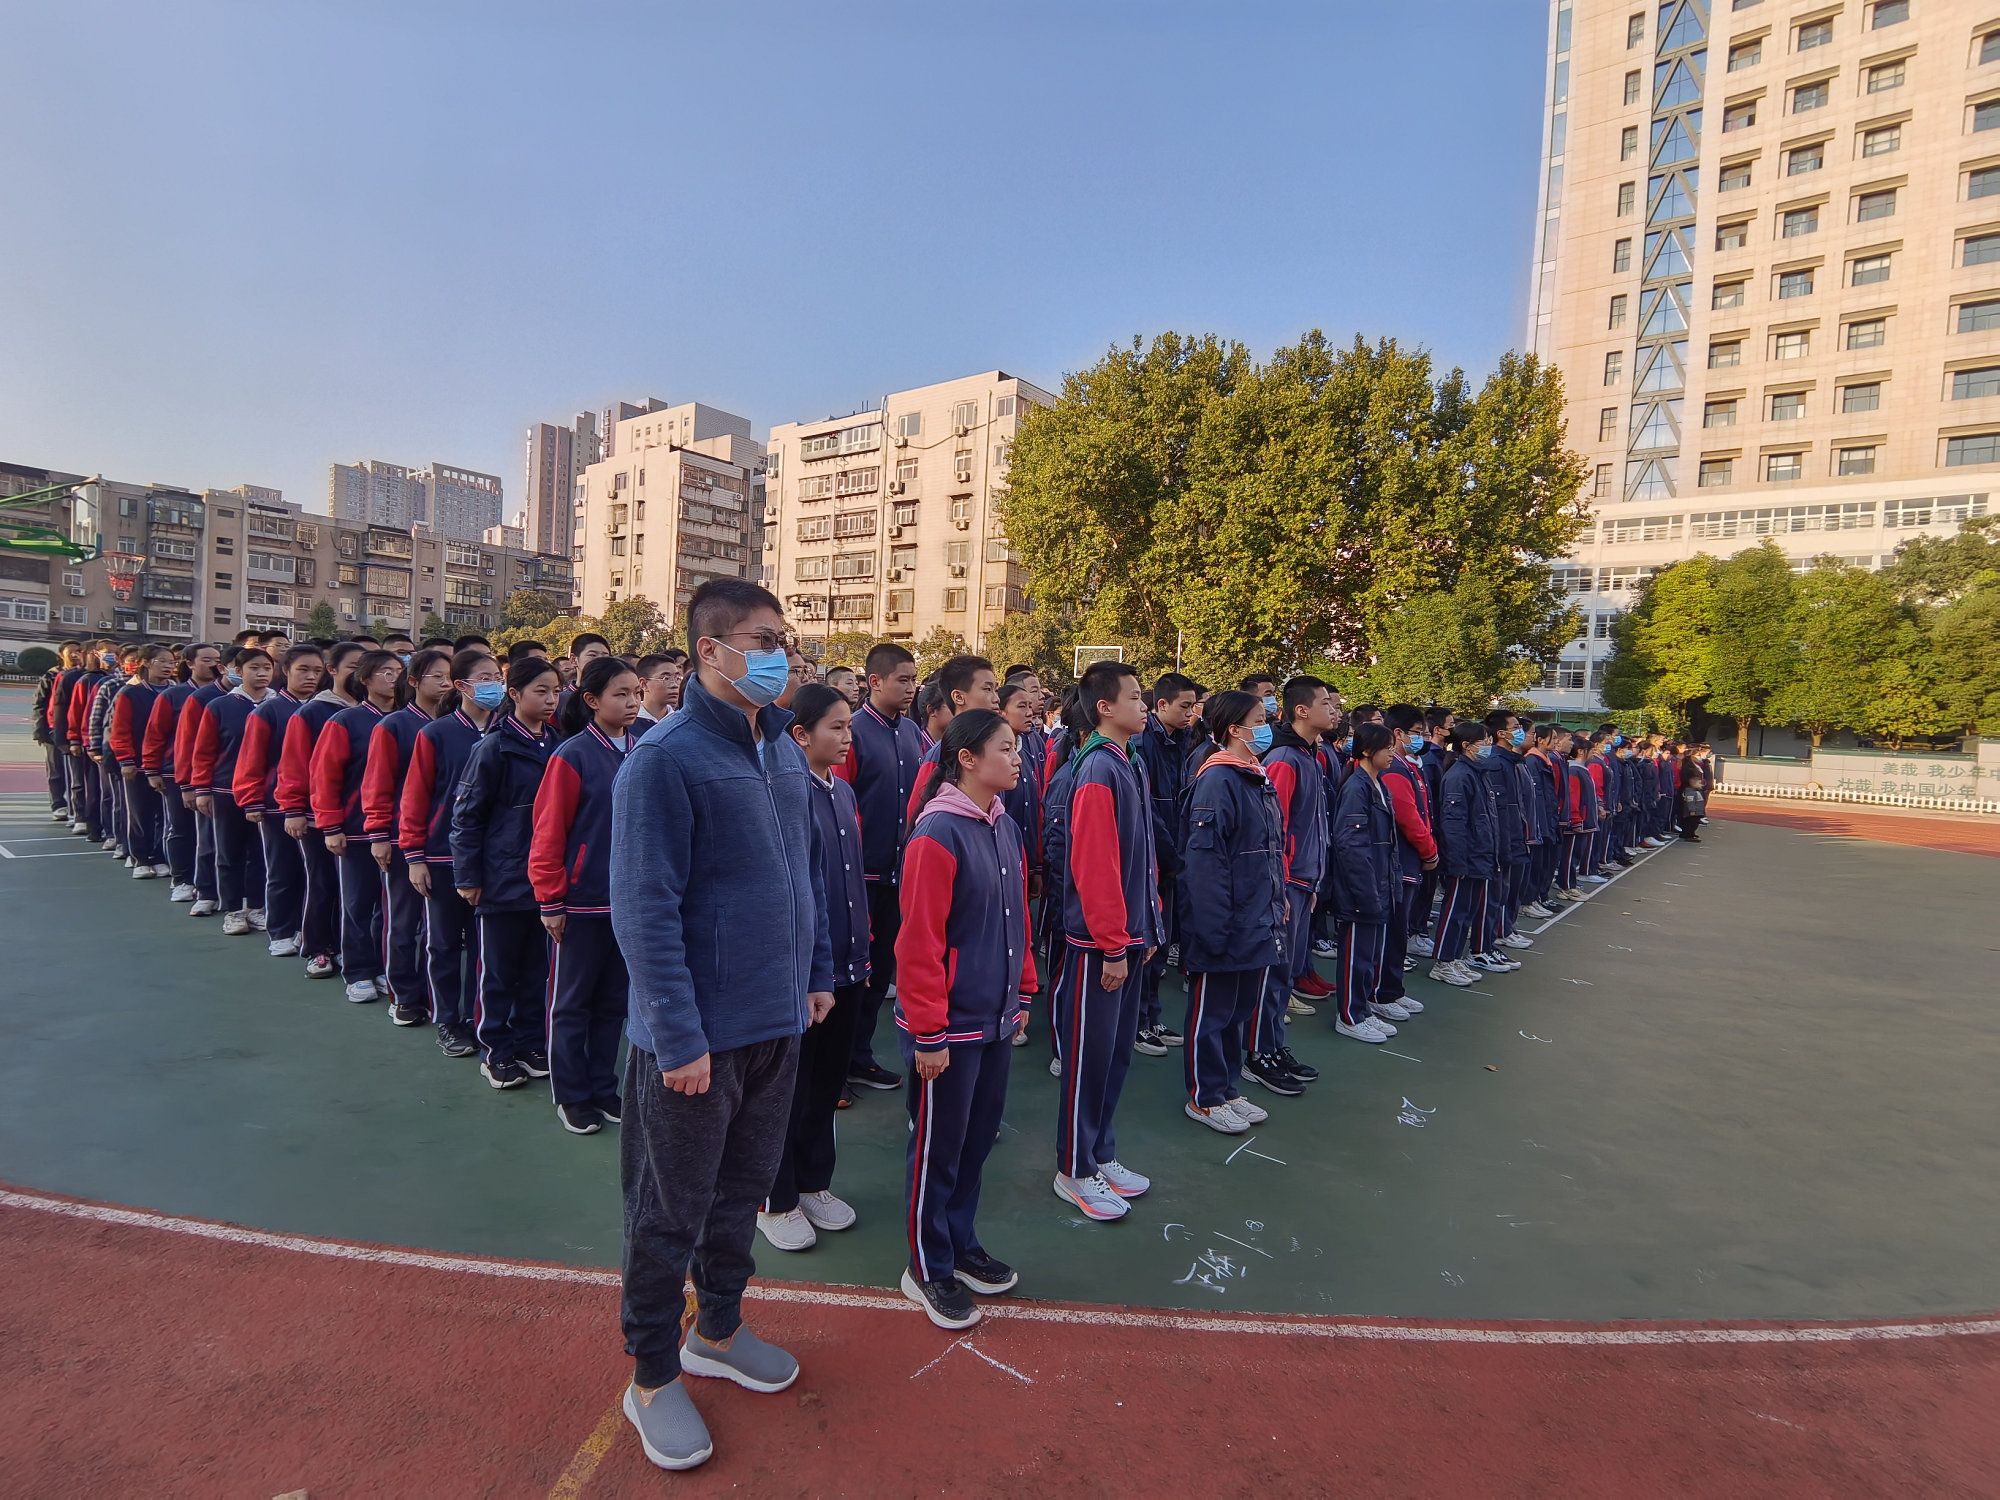 郑州市第十九初级中学图片